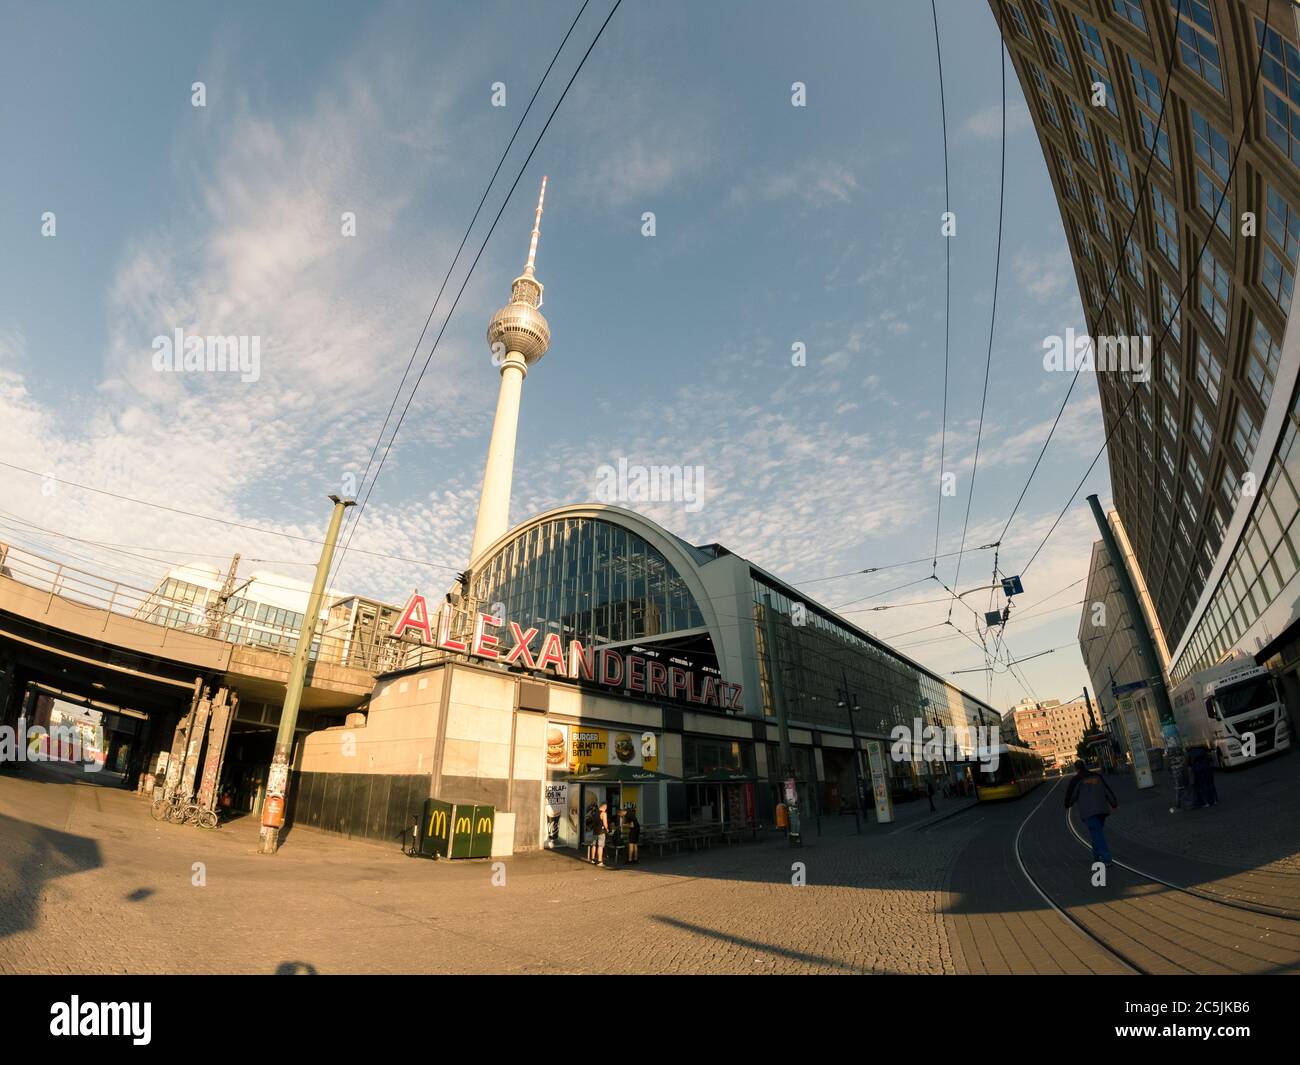 Berlin, Deutschland - 17. Juni 2020 - Blick auf den Alexanderplatz-Bahnhof mit dem berühmten Berliner Fernsehturm im Hintergrund Stockfoto